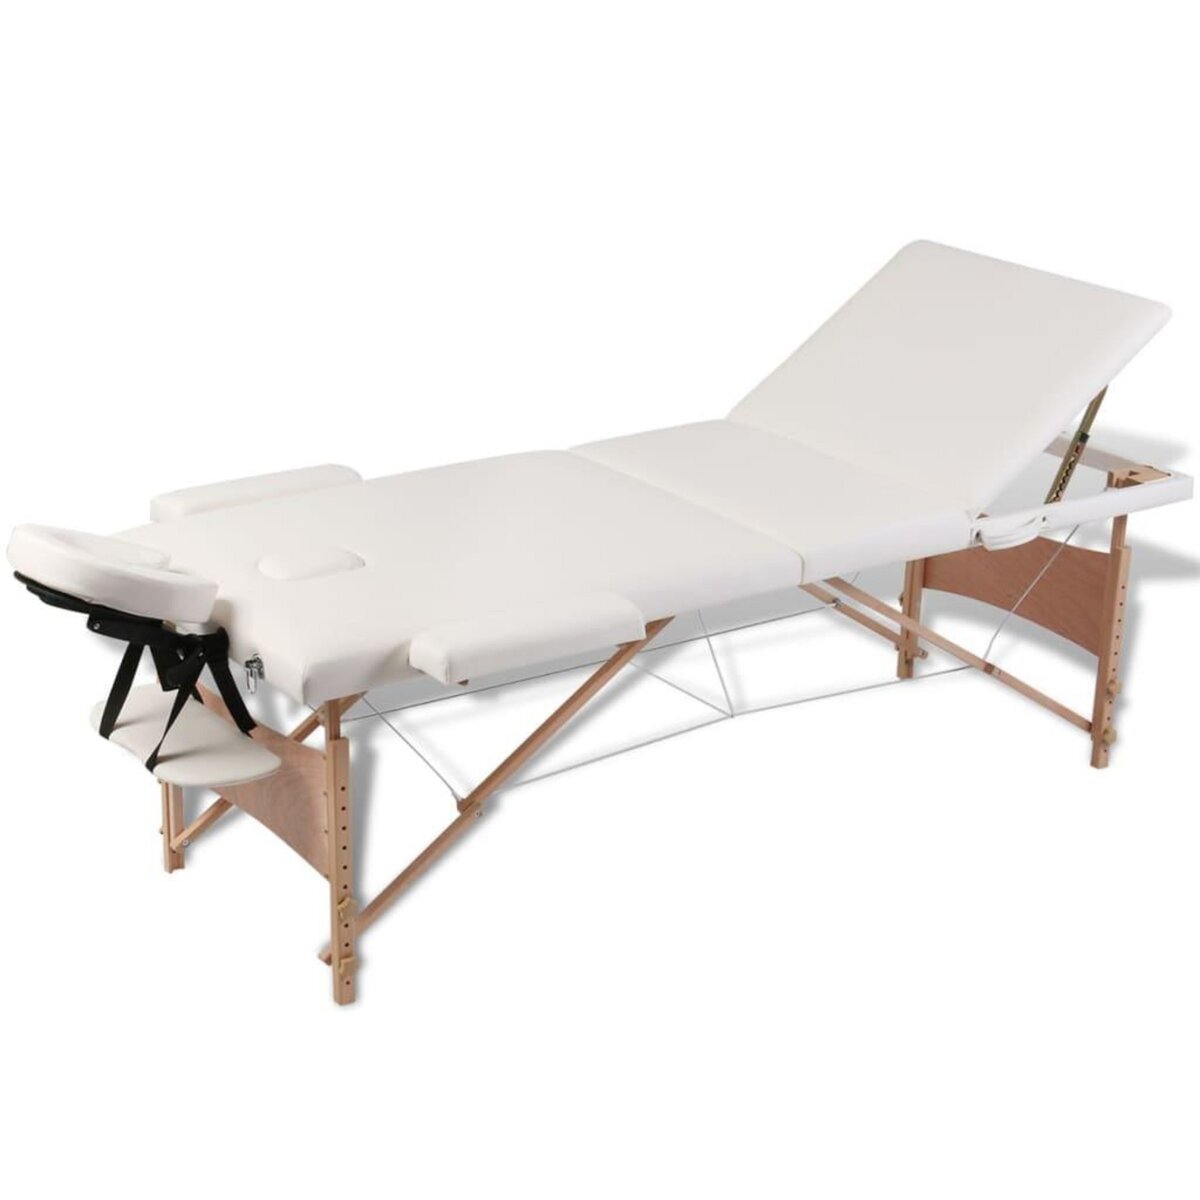 VIDAXL Table de massage pliable Blanc creme 3 zones avec cadre en bois